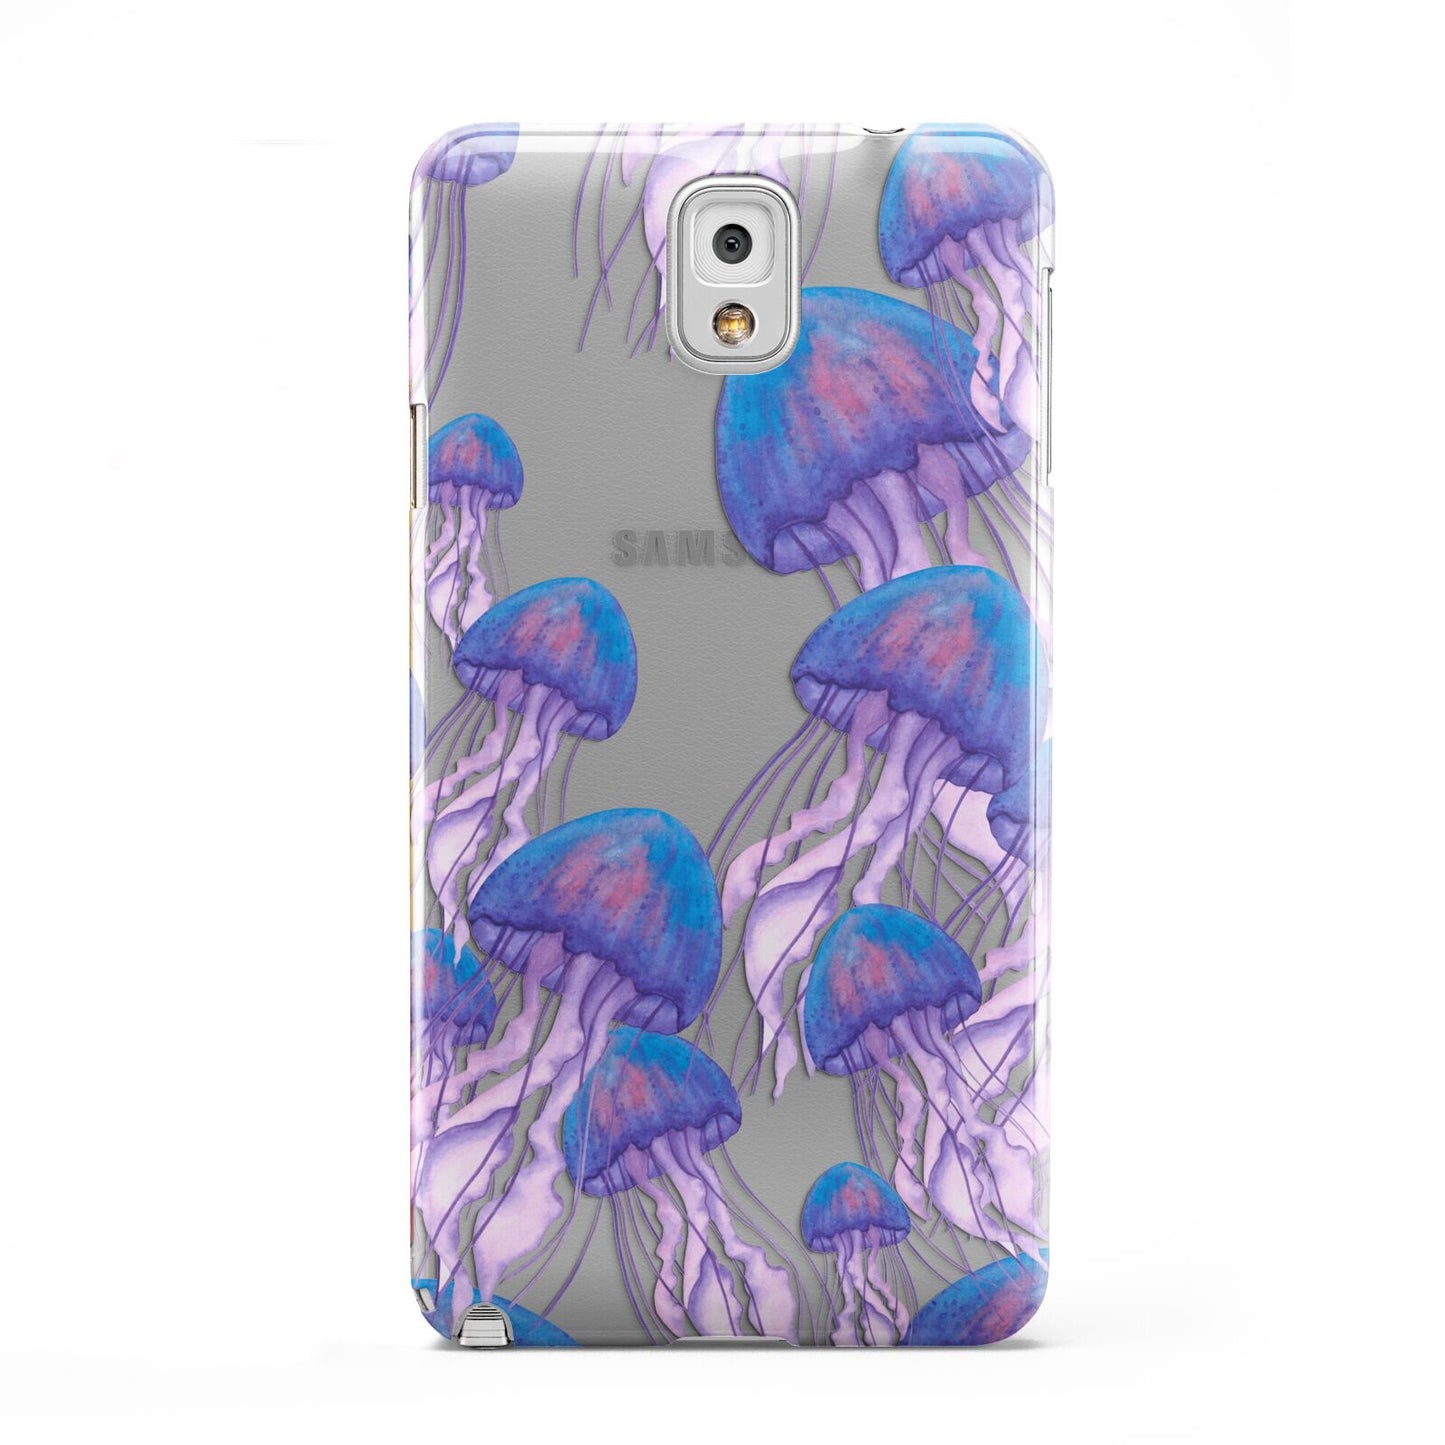 Jellyfish Samsung Galaxy Note 3 Case